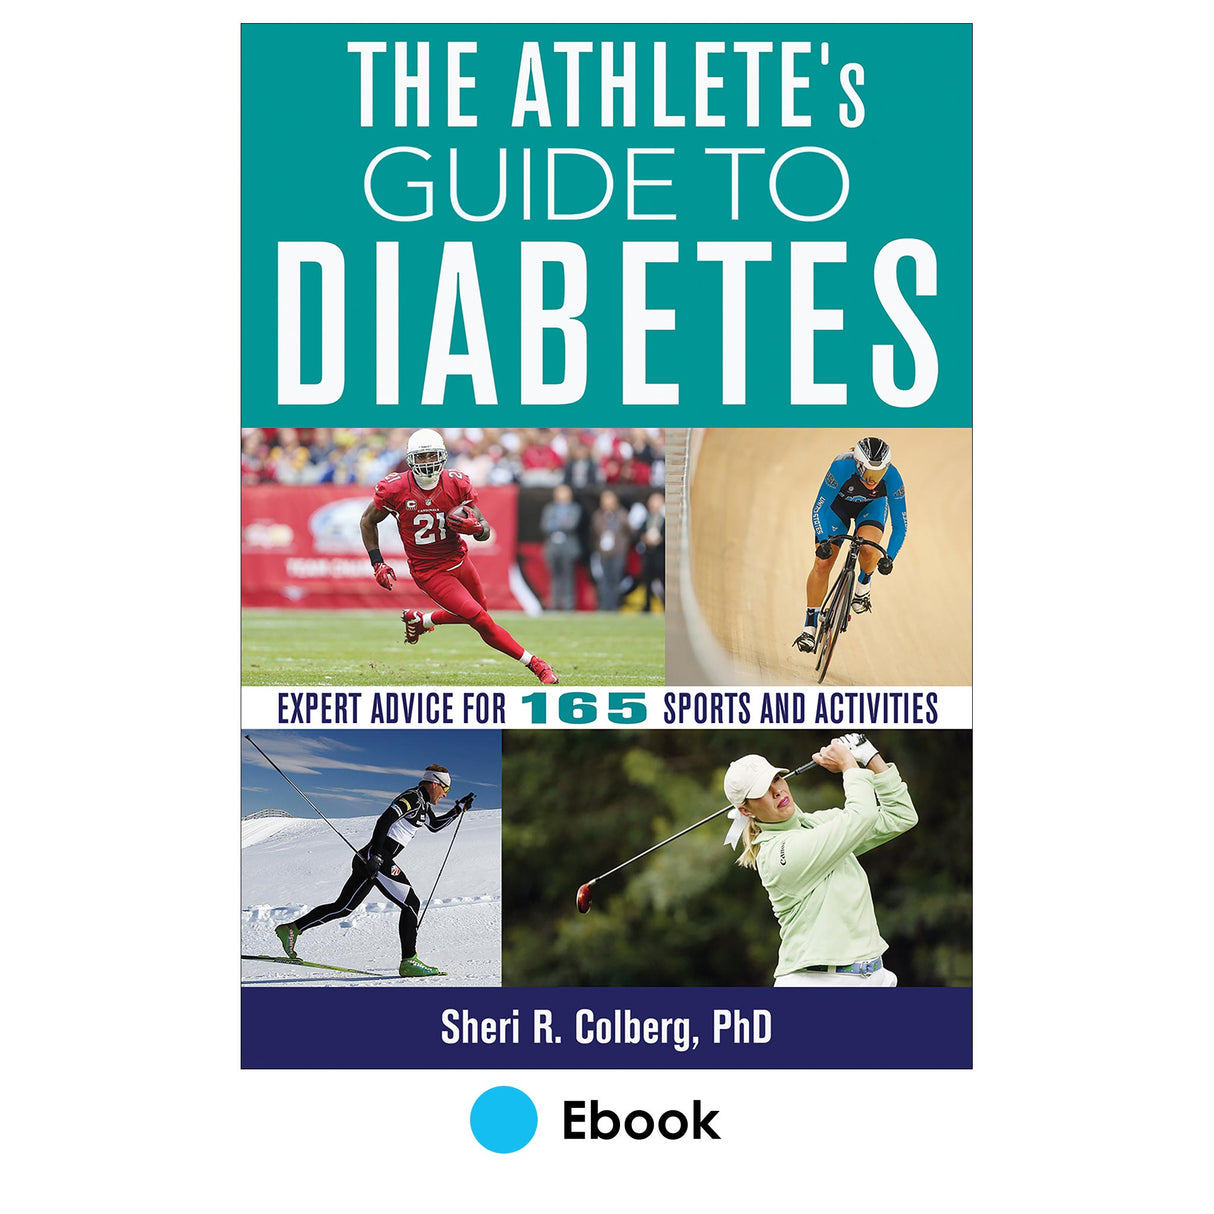 Athlete’s Guide to Diabetes epub, The